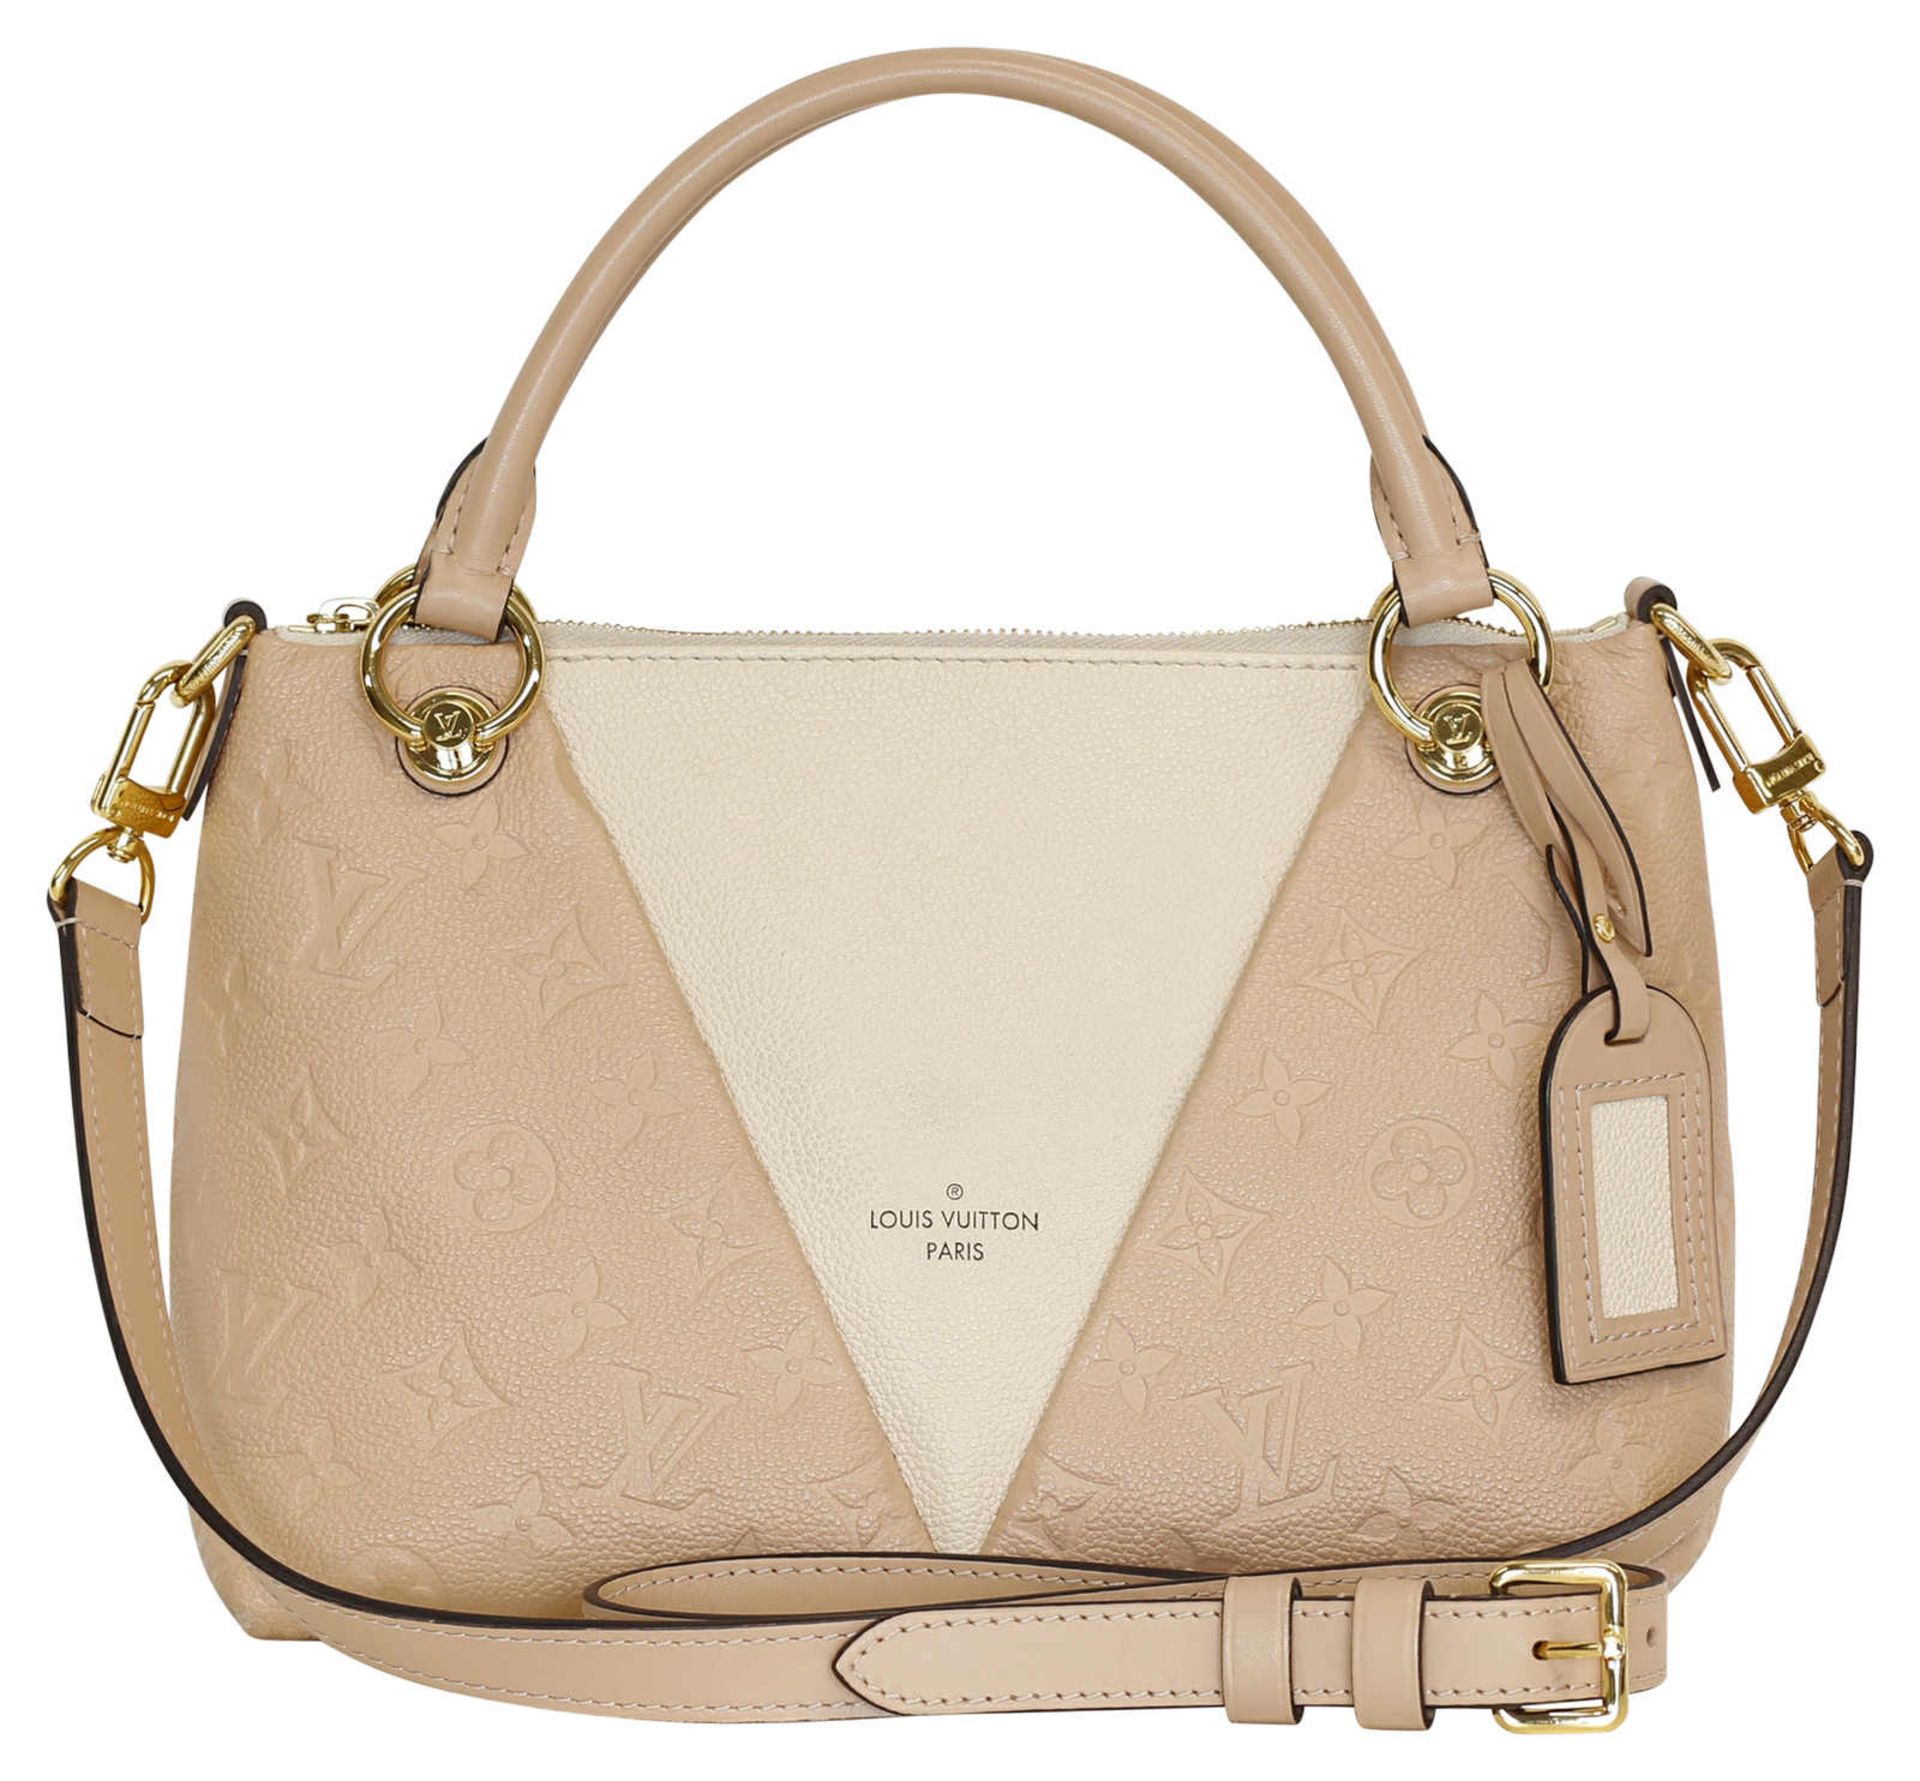 (*) LOUIS VUITTON Handtasche Louis Vuitton Tote Bag, Leder in creme beige mit Monogram Prägung.